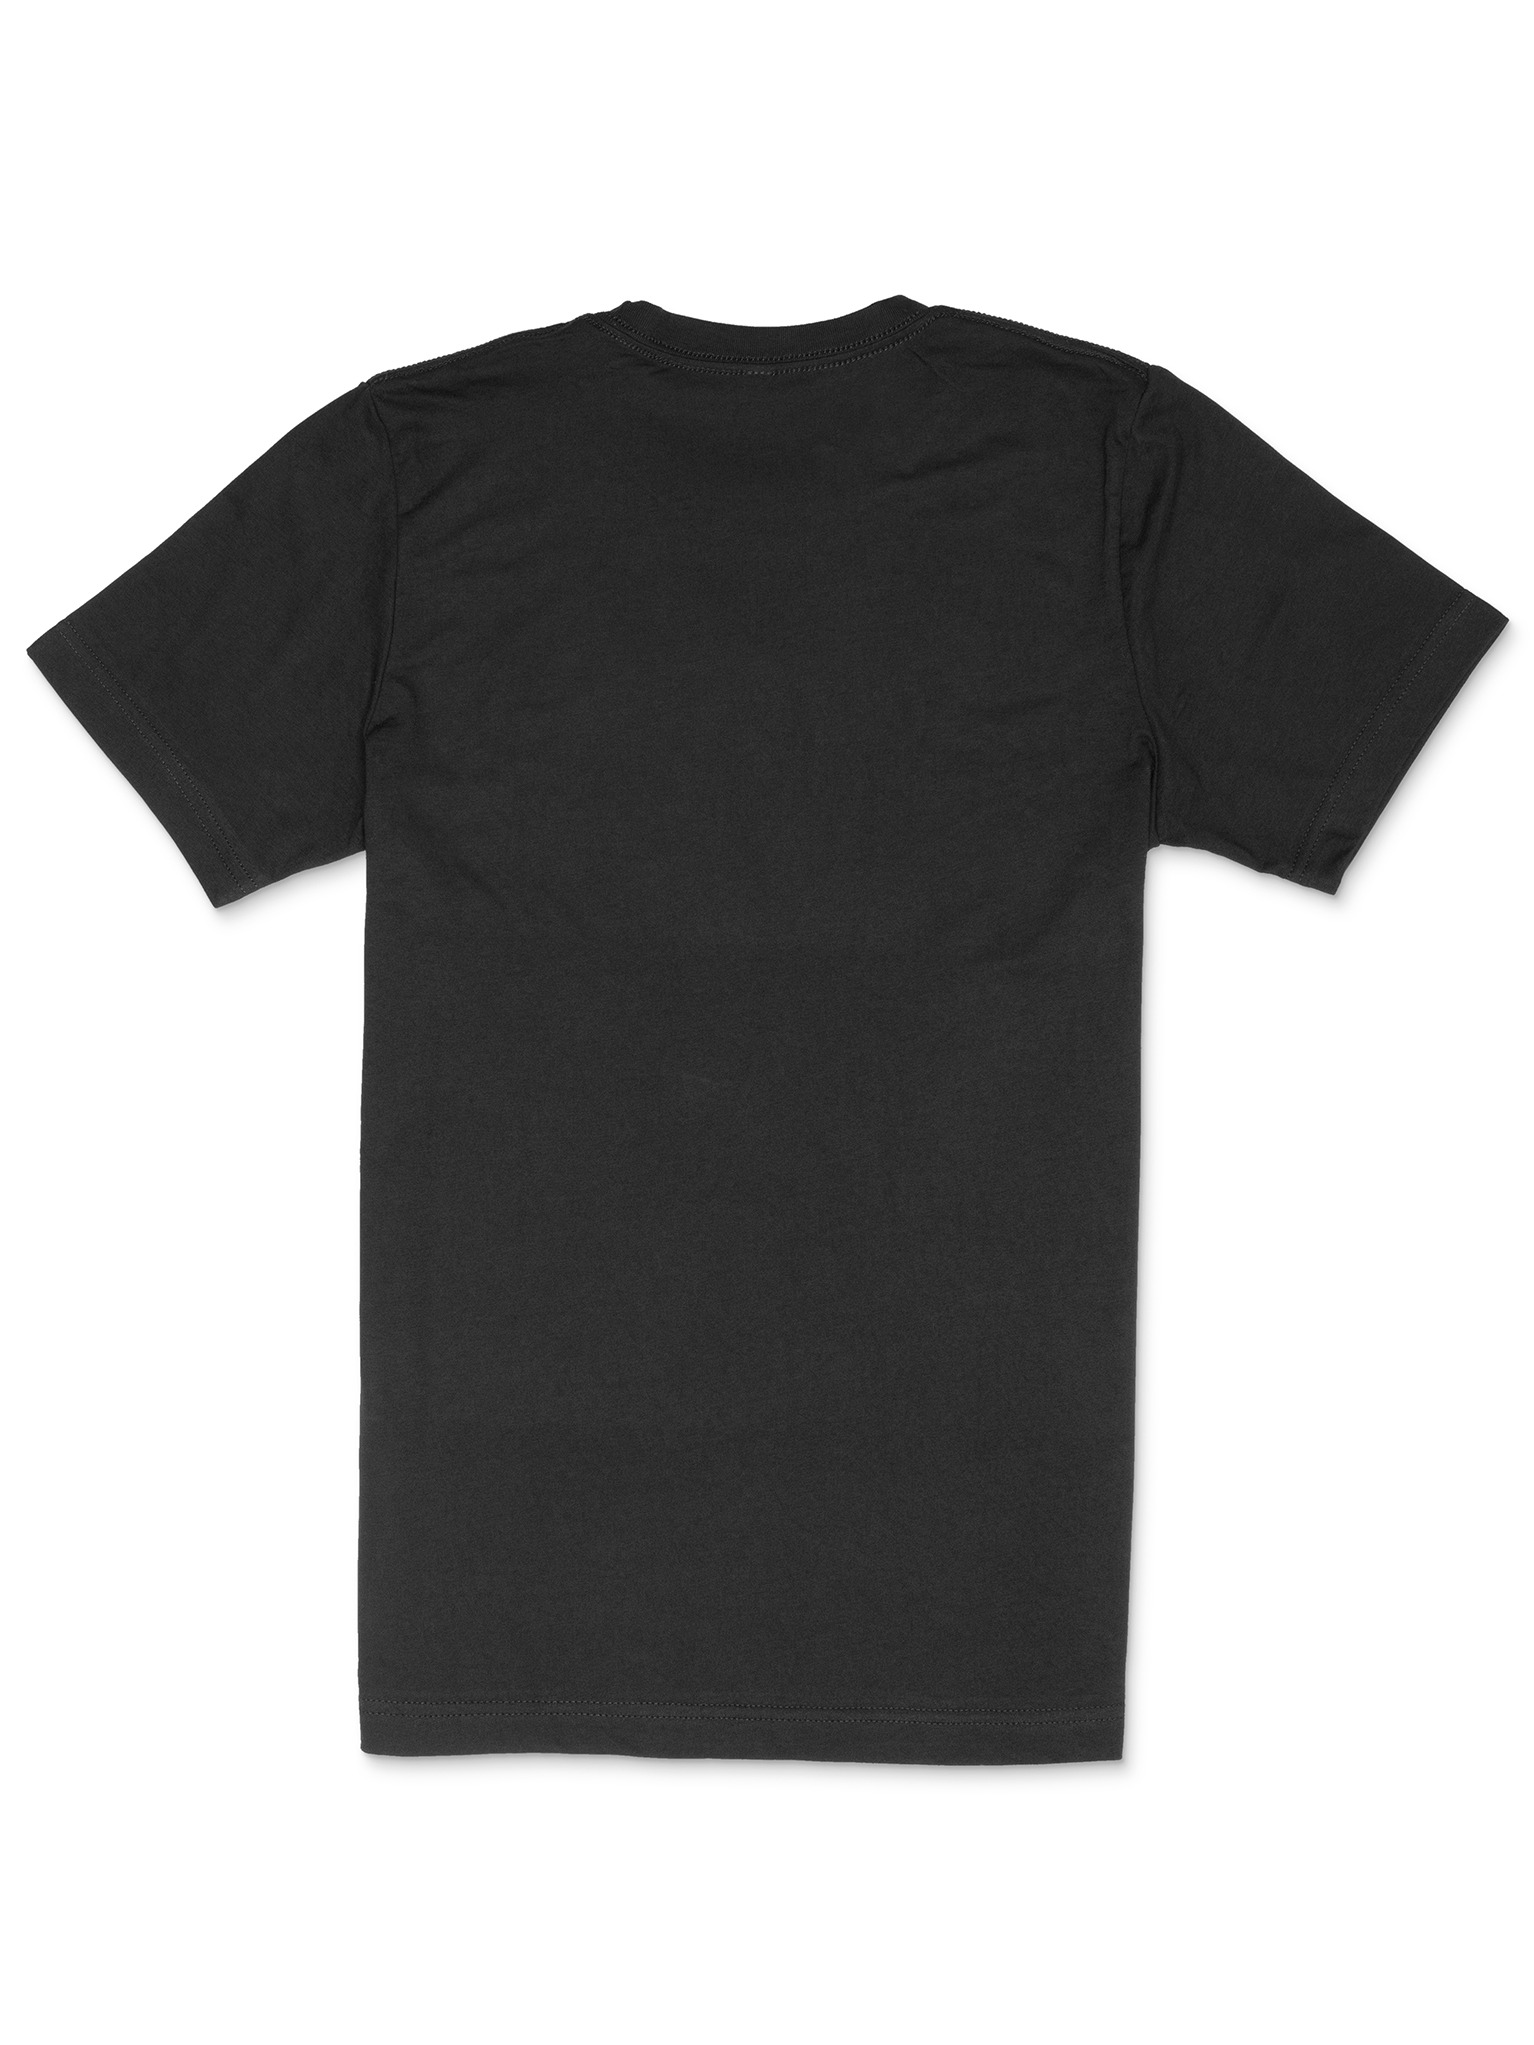 HELKPLS T-Shirt | RUSTFANART